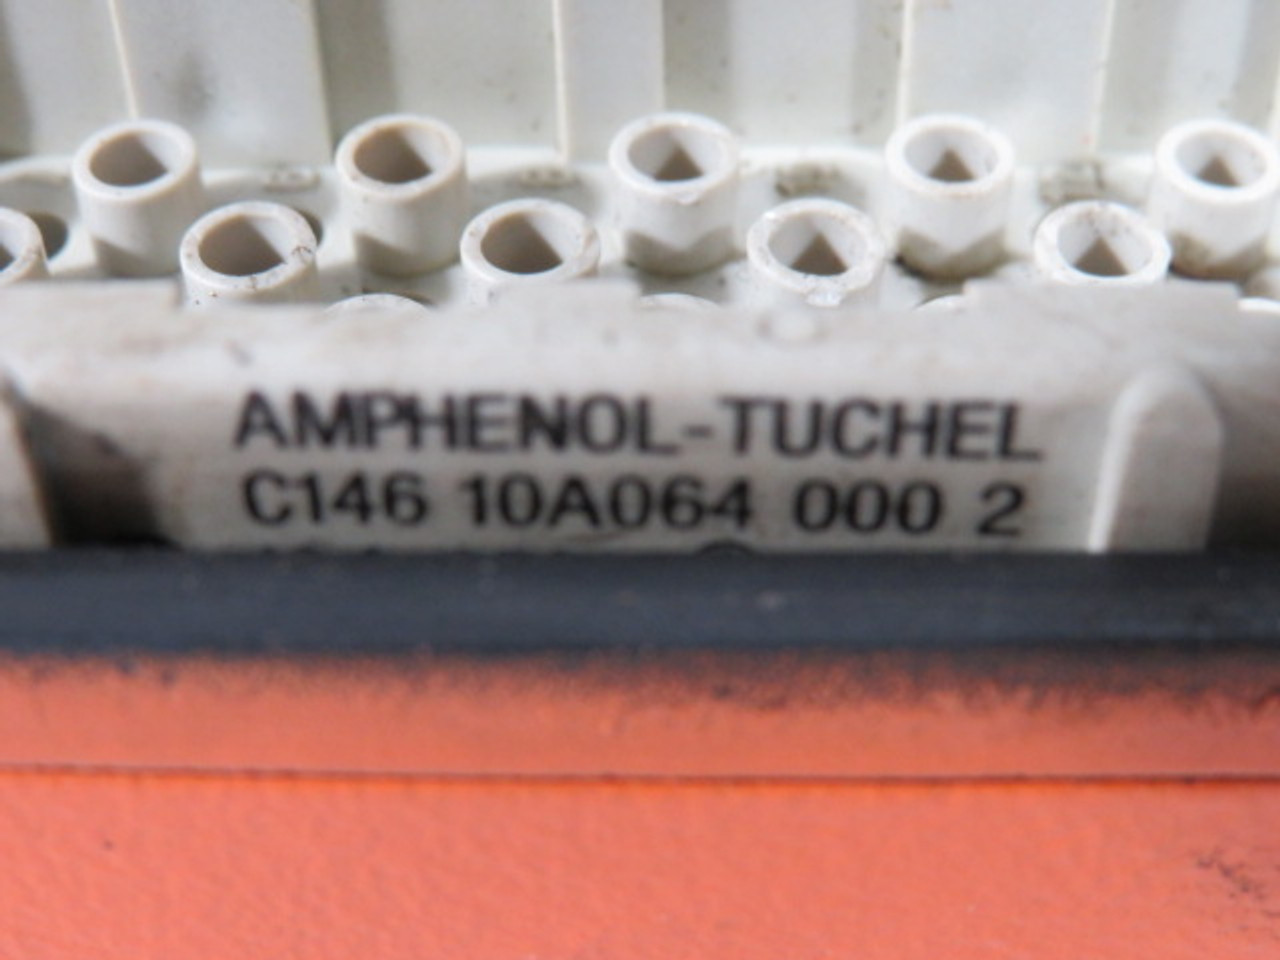 Amphenol-Tuchel C146-10A064-0002 Male Connector w/Enclosure 250V 10A USED